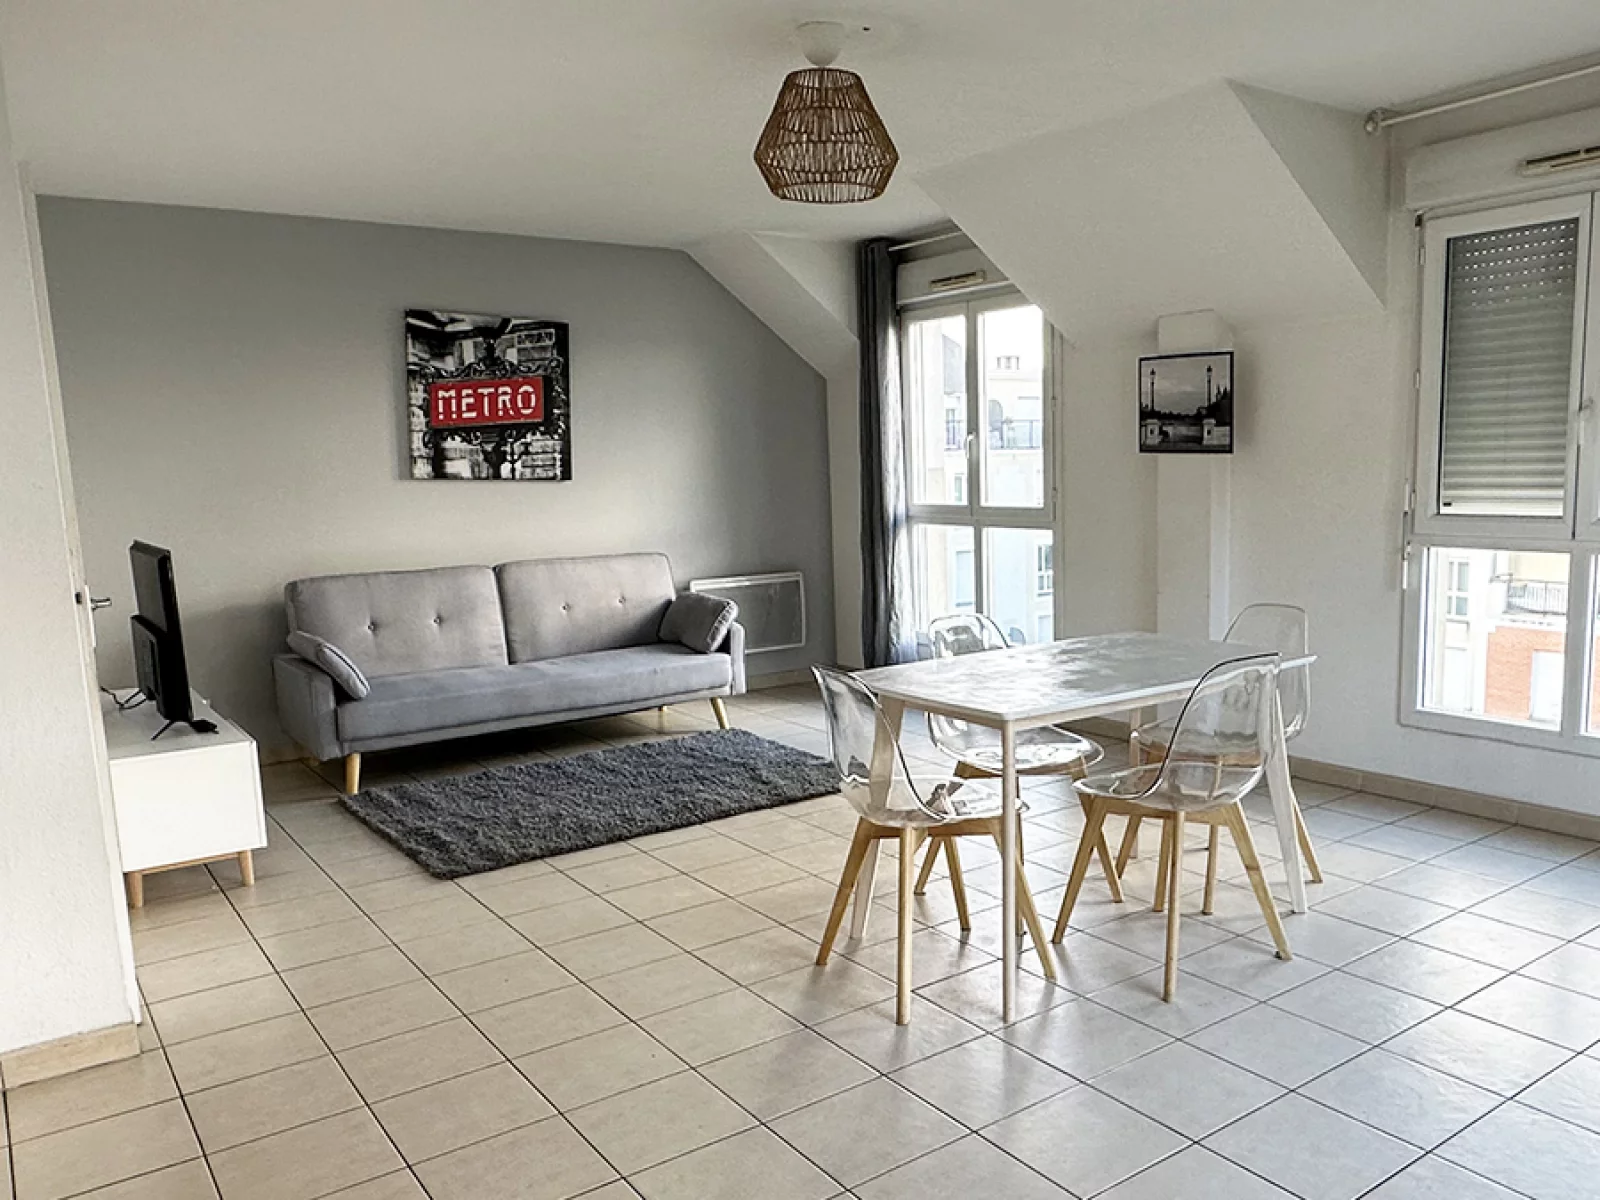 Location appartement meublé duplex 3 pièces 69m² (Paris est - Bry s/ Marne)